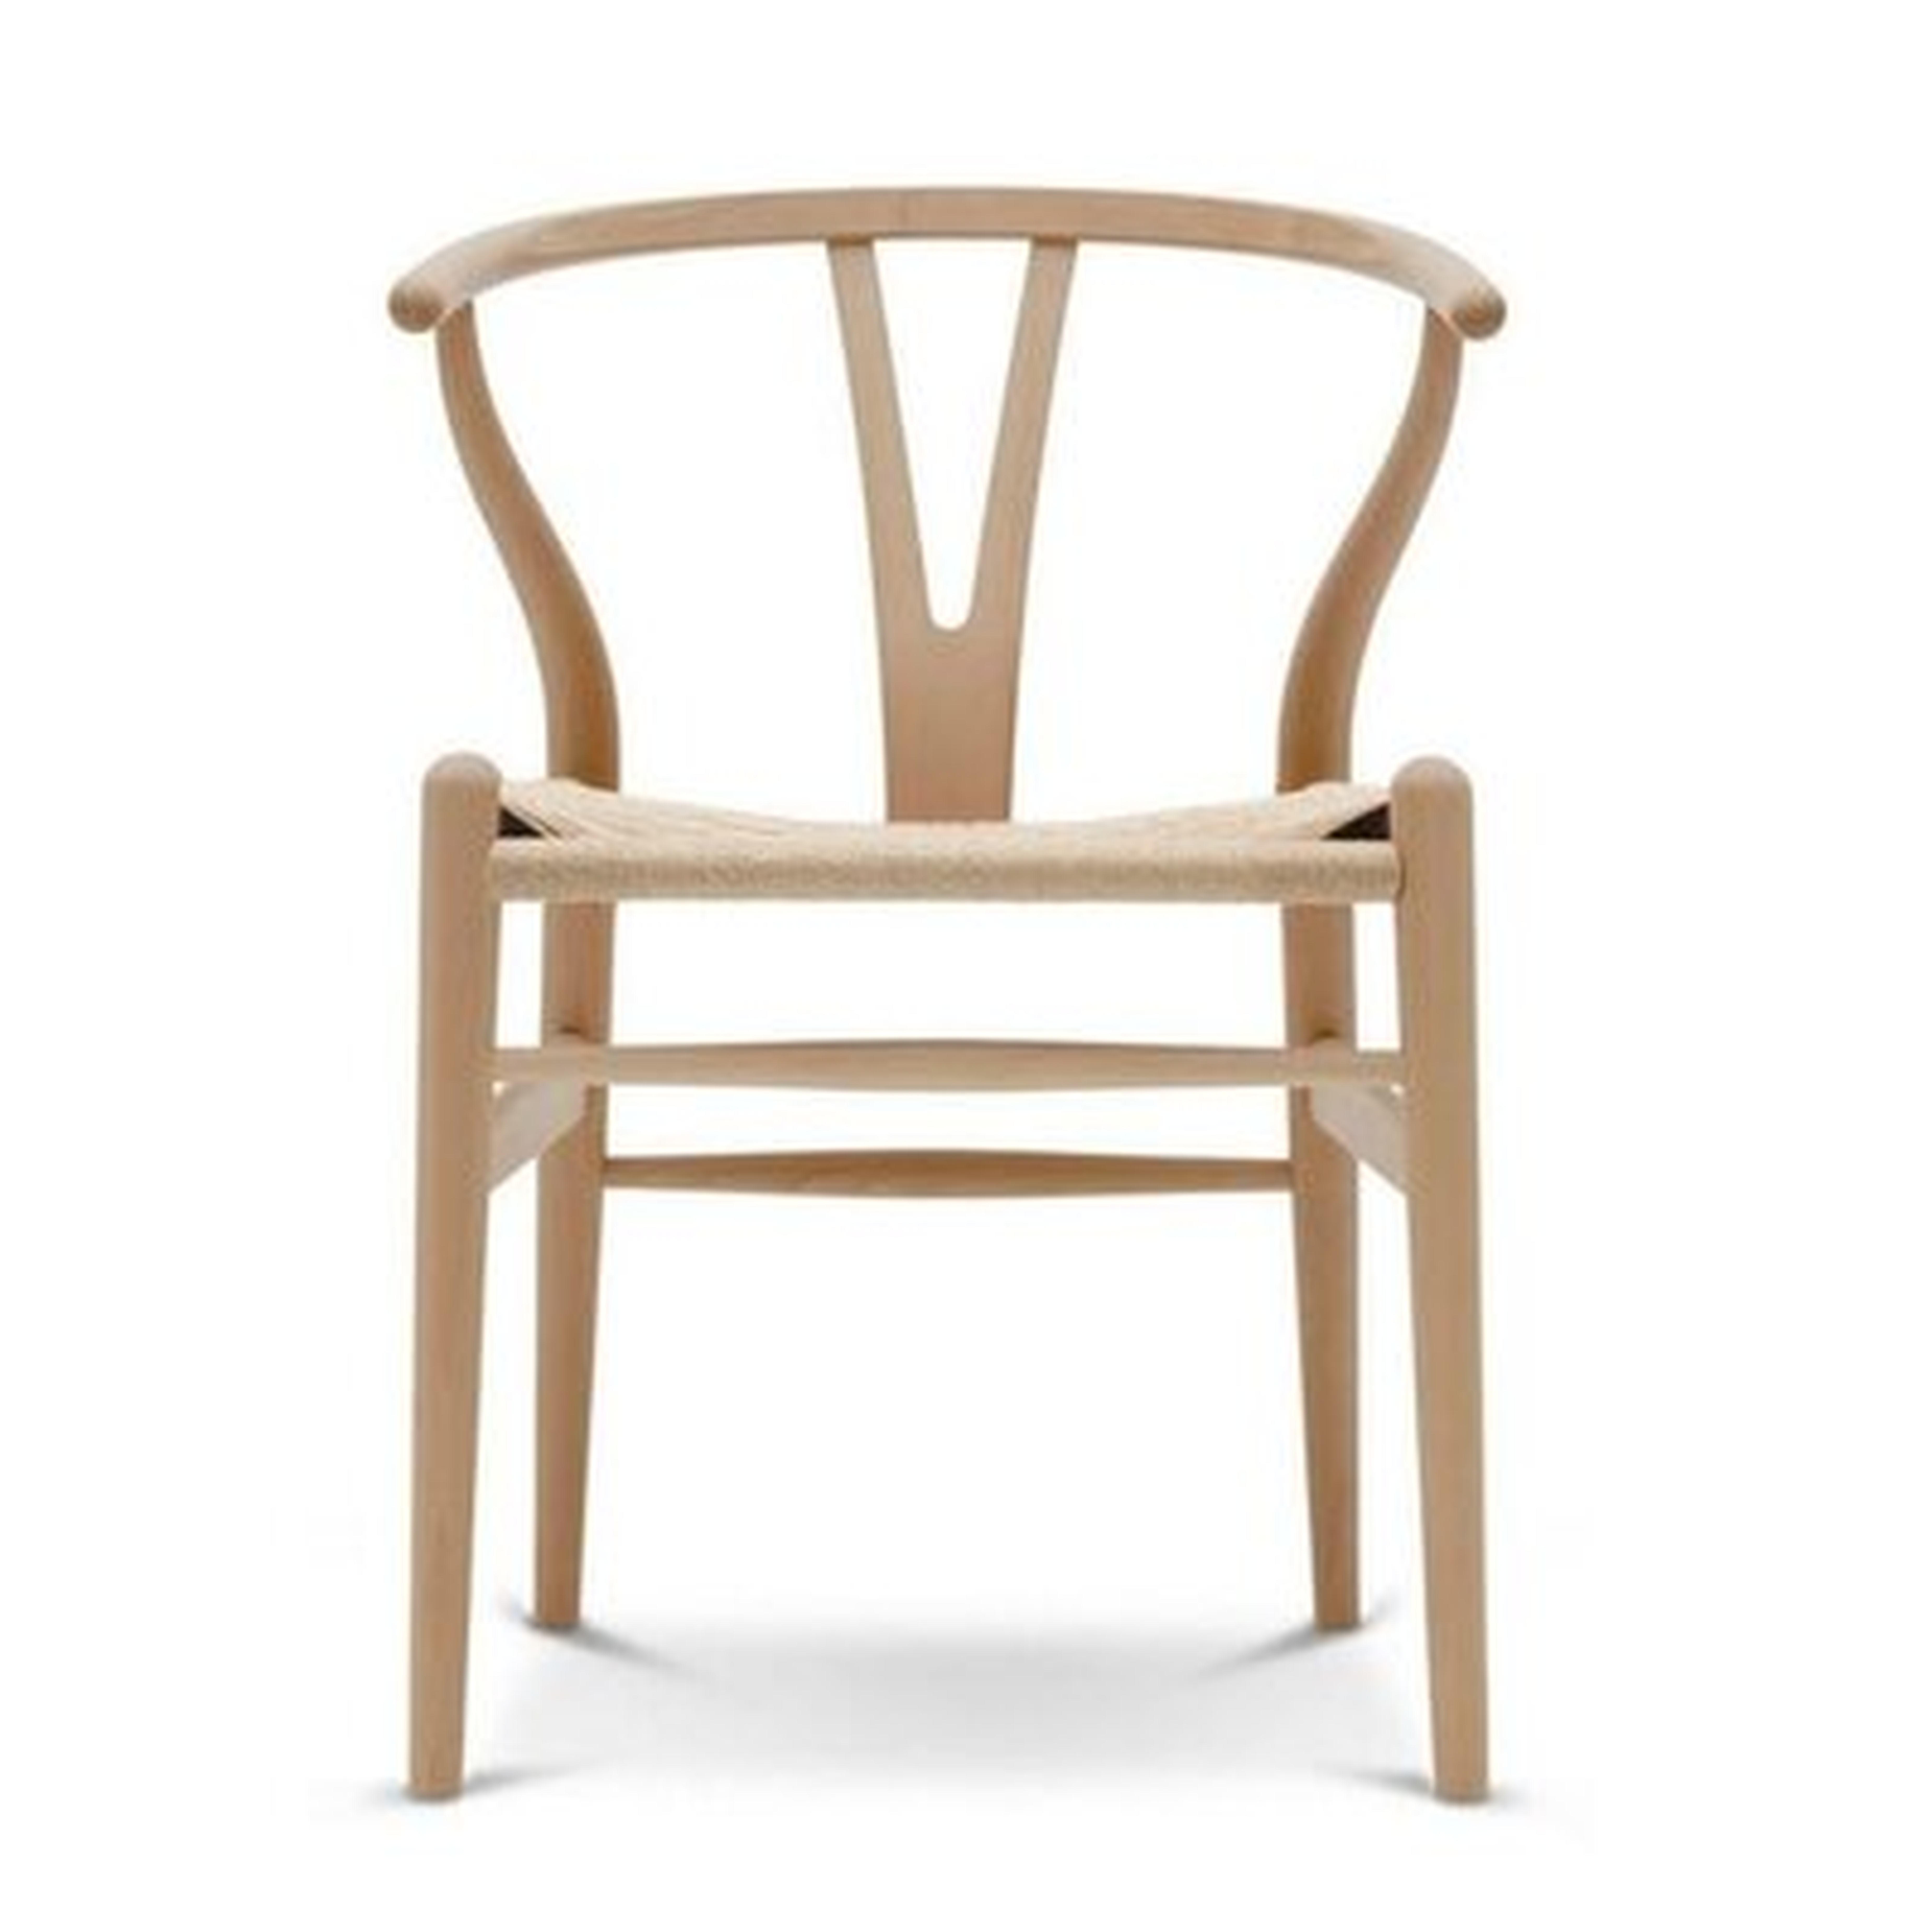 Tesch Solid Wood Slat Back Side Chair in Beige - Wayfair